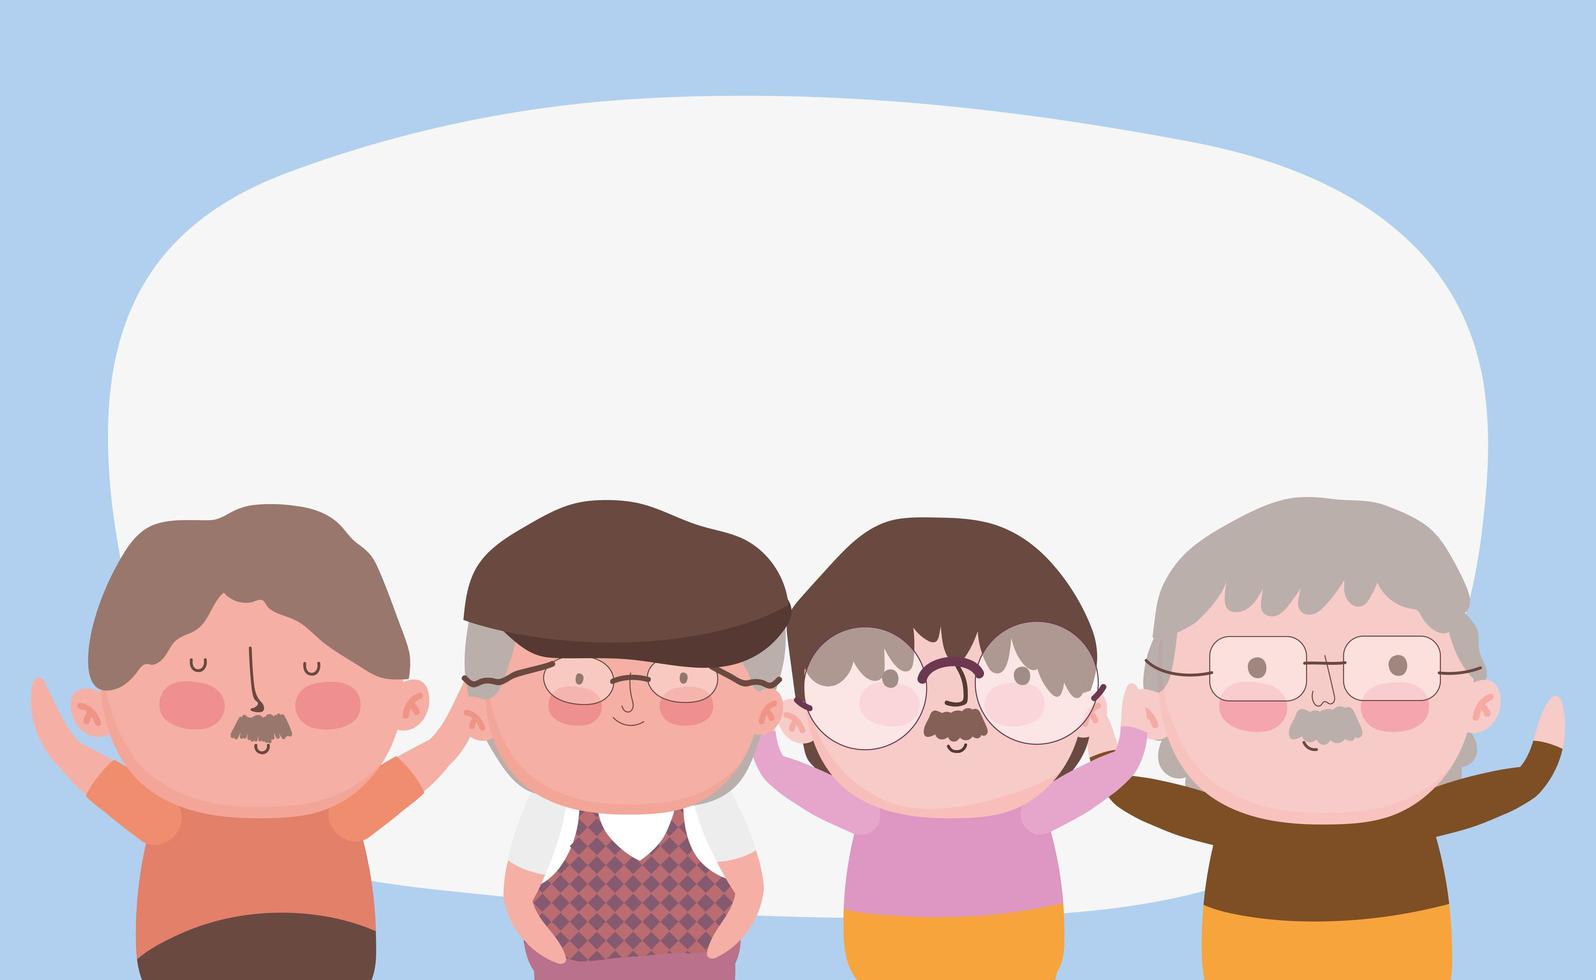 felice giorno dei nonni, personaggi dei cartoni animati dei nonni del gruppo ritratto vettore